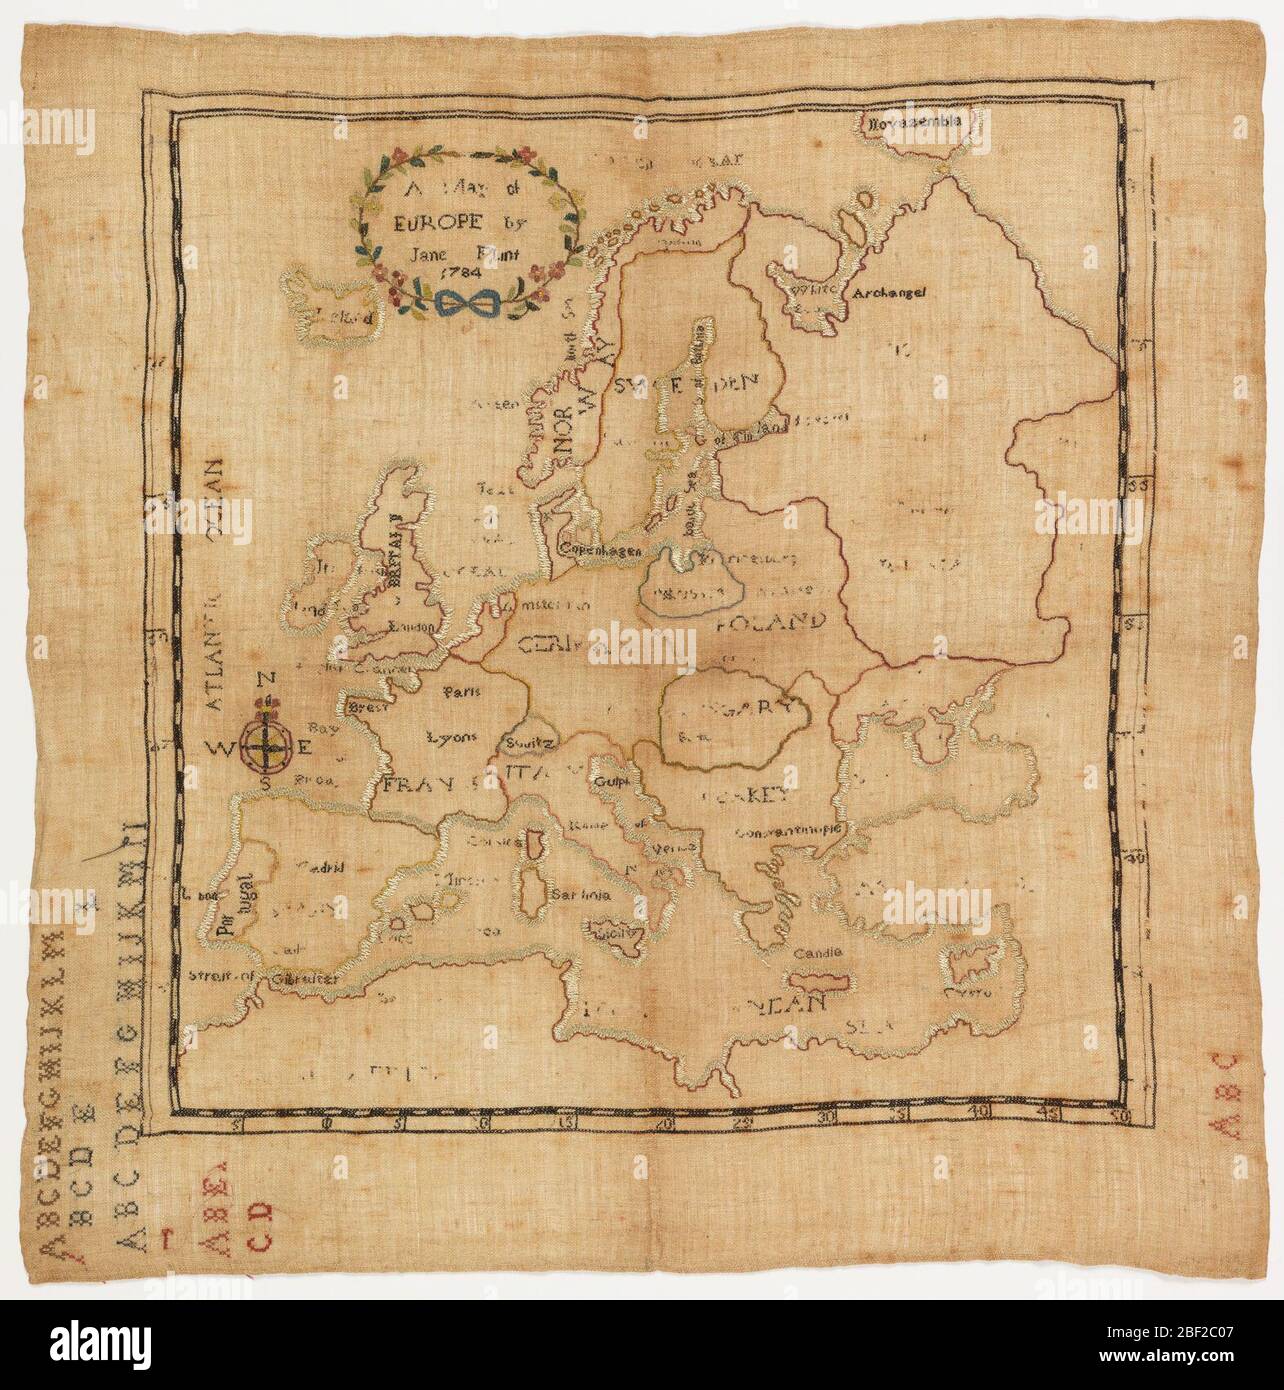 Echantillonneur de carte. Europe avec les noms des pays et des plans d'eau dans la broderie. Le coin supérieur indique « UNE carte de l'Europe par Jane Flint 1784 ». La marge inférieure a un alphabet. Banque D'Images